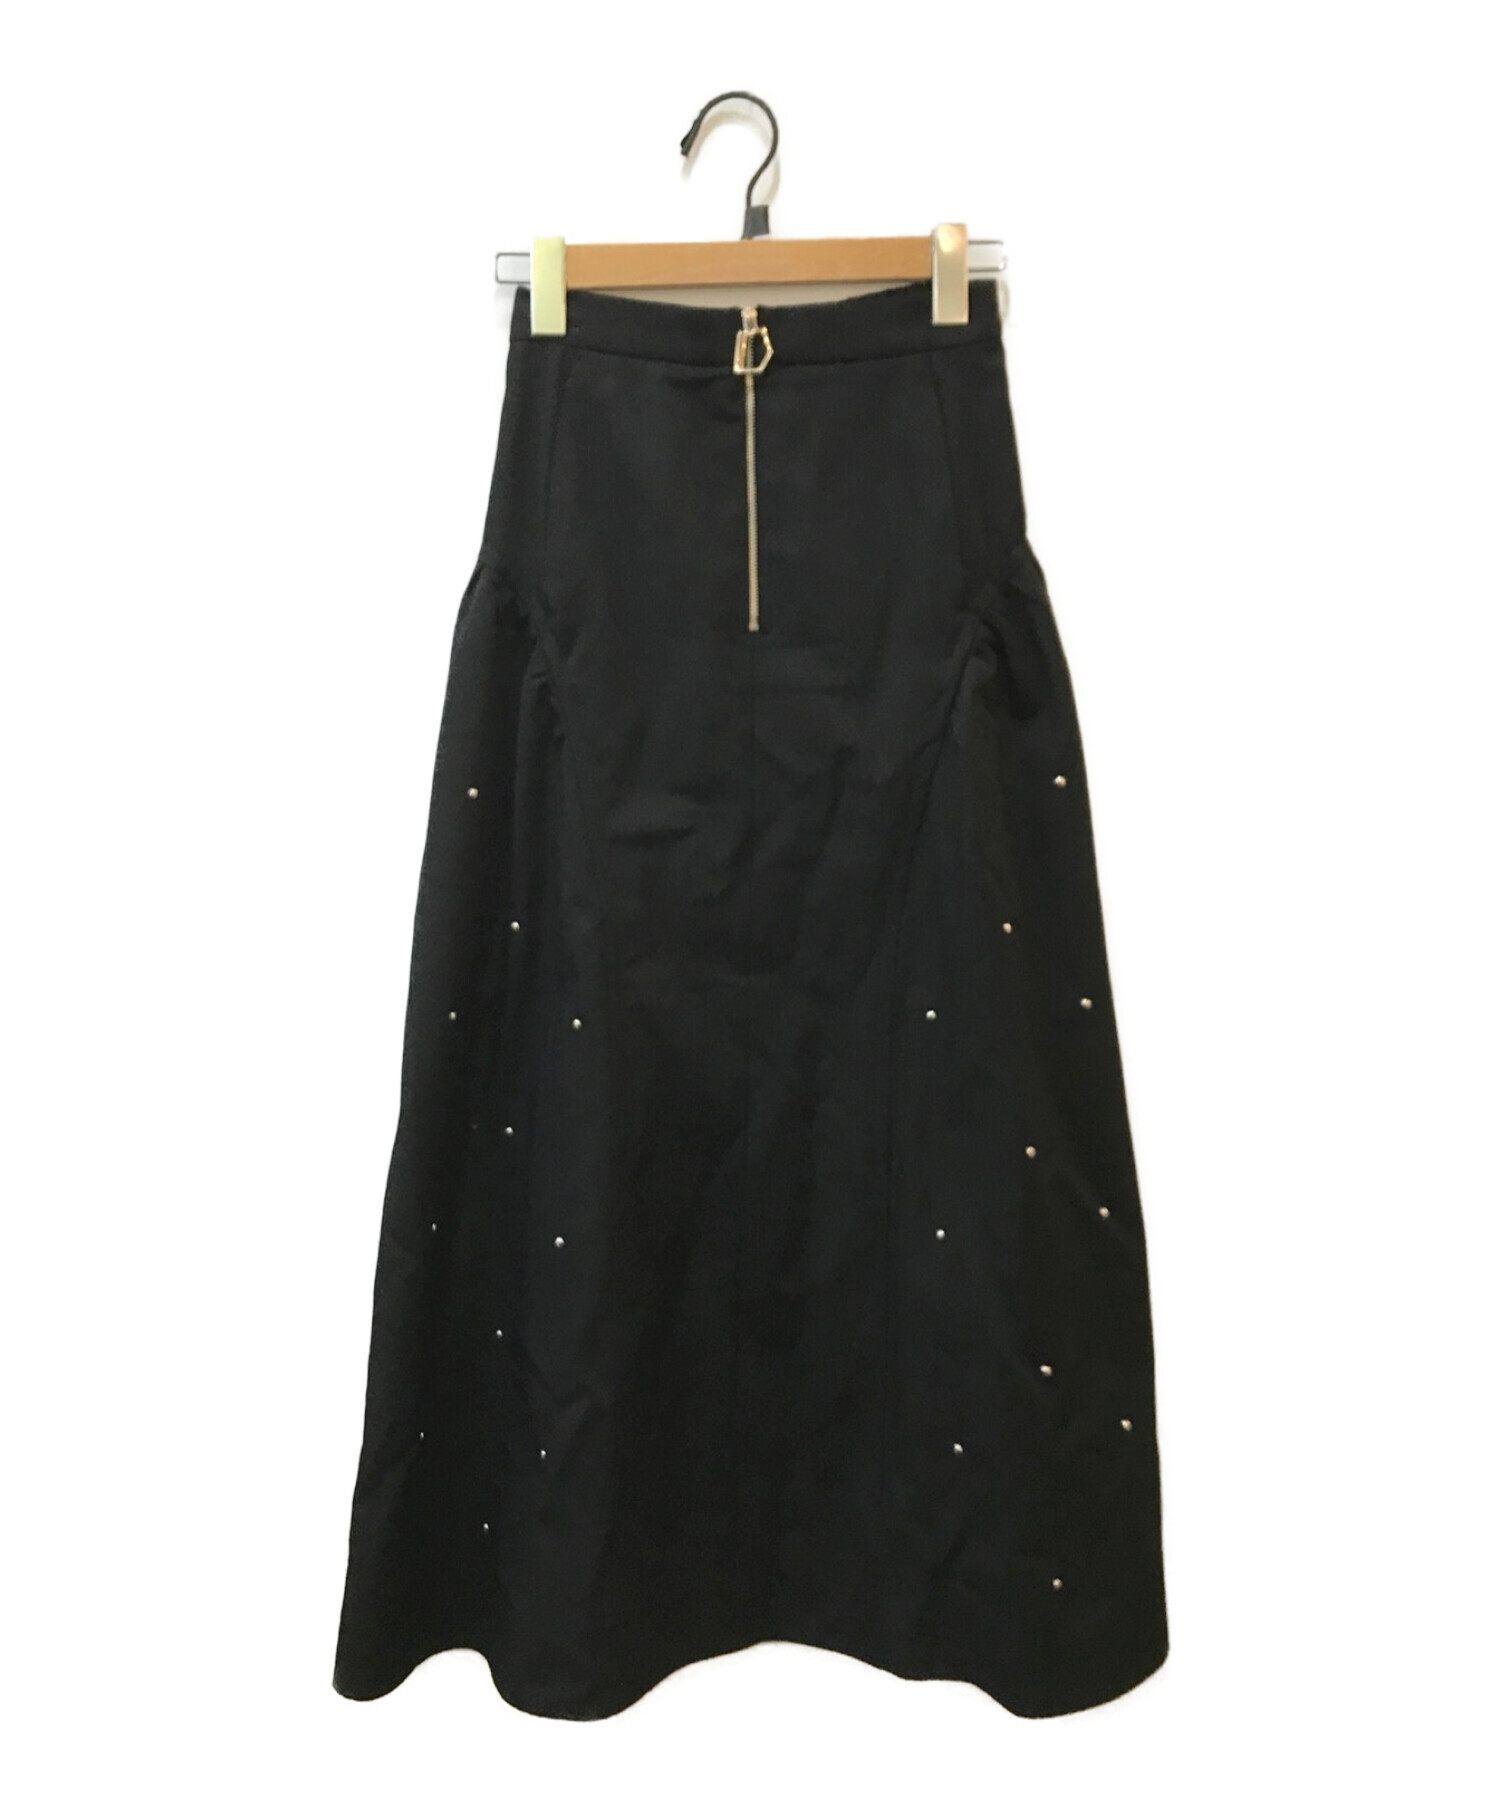 UNITED TOKYO (ユナイテッドトウキョウ) シャルルスタッズボリュームスカート ブラック サイズ:FREE 未使用品